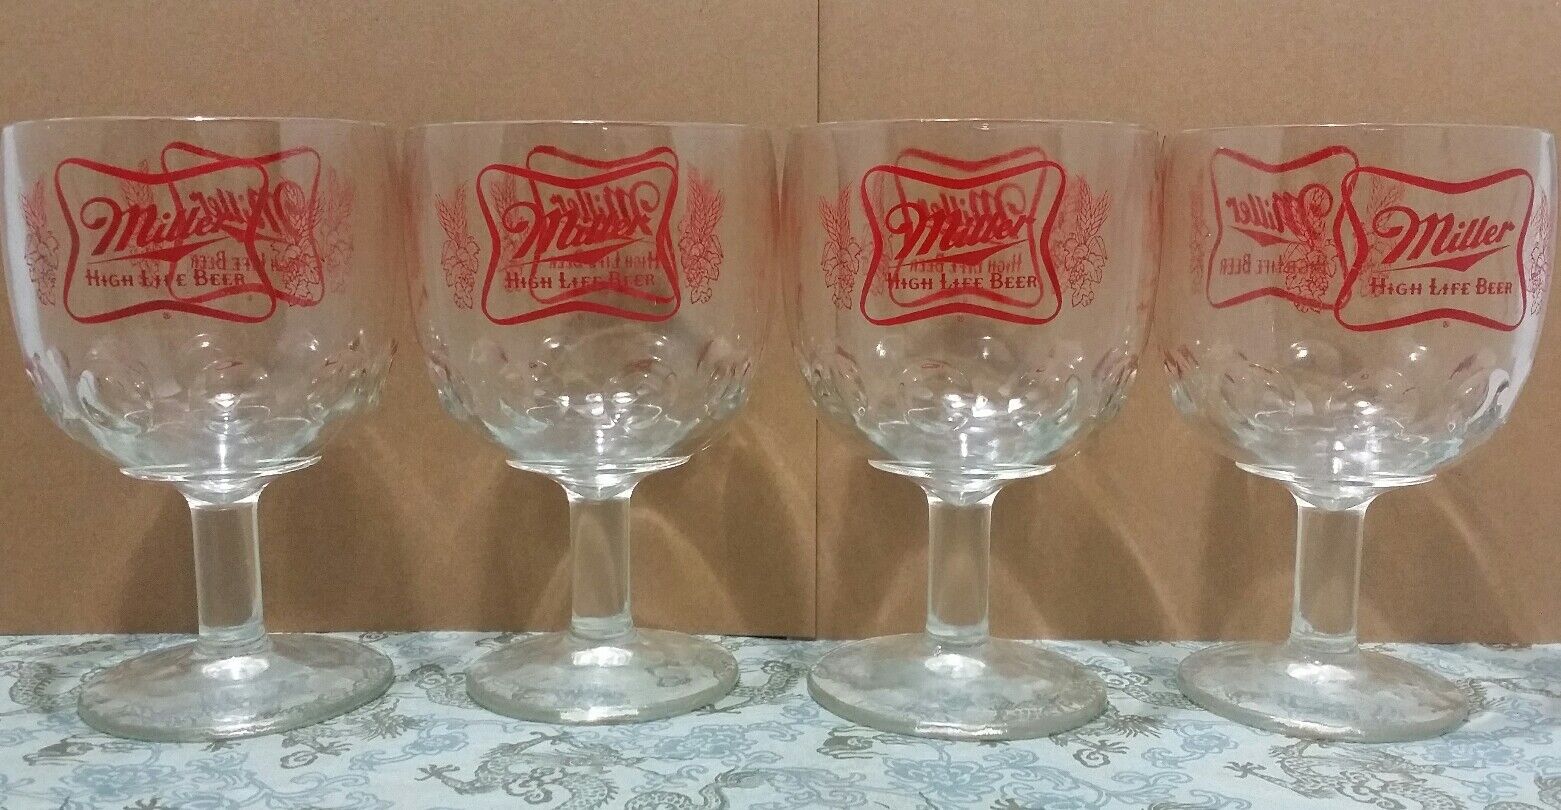 4 Vintage Miller High Life Beer Goblet Glasses Stemmed Chalice Summer Home Bar Miller - фотография #4